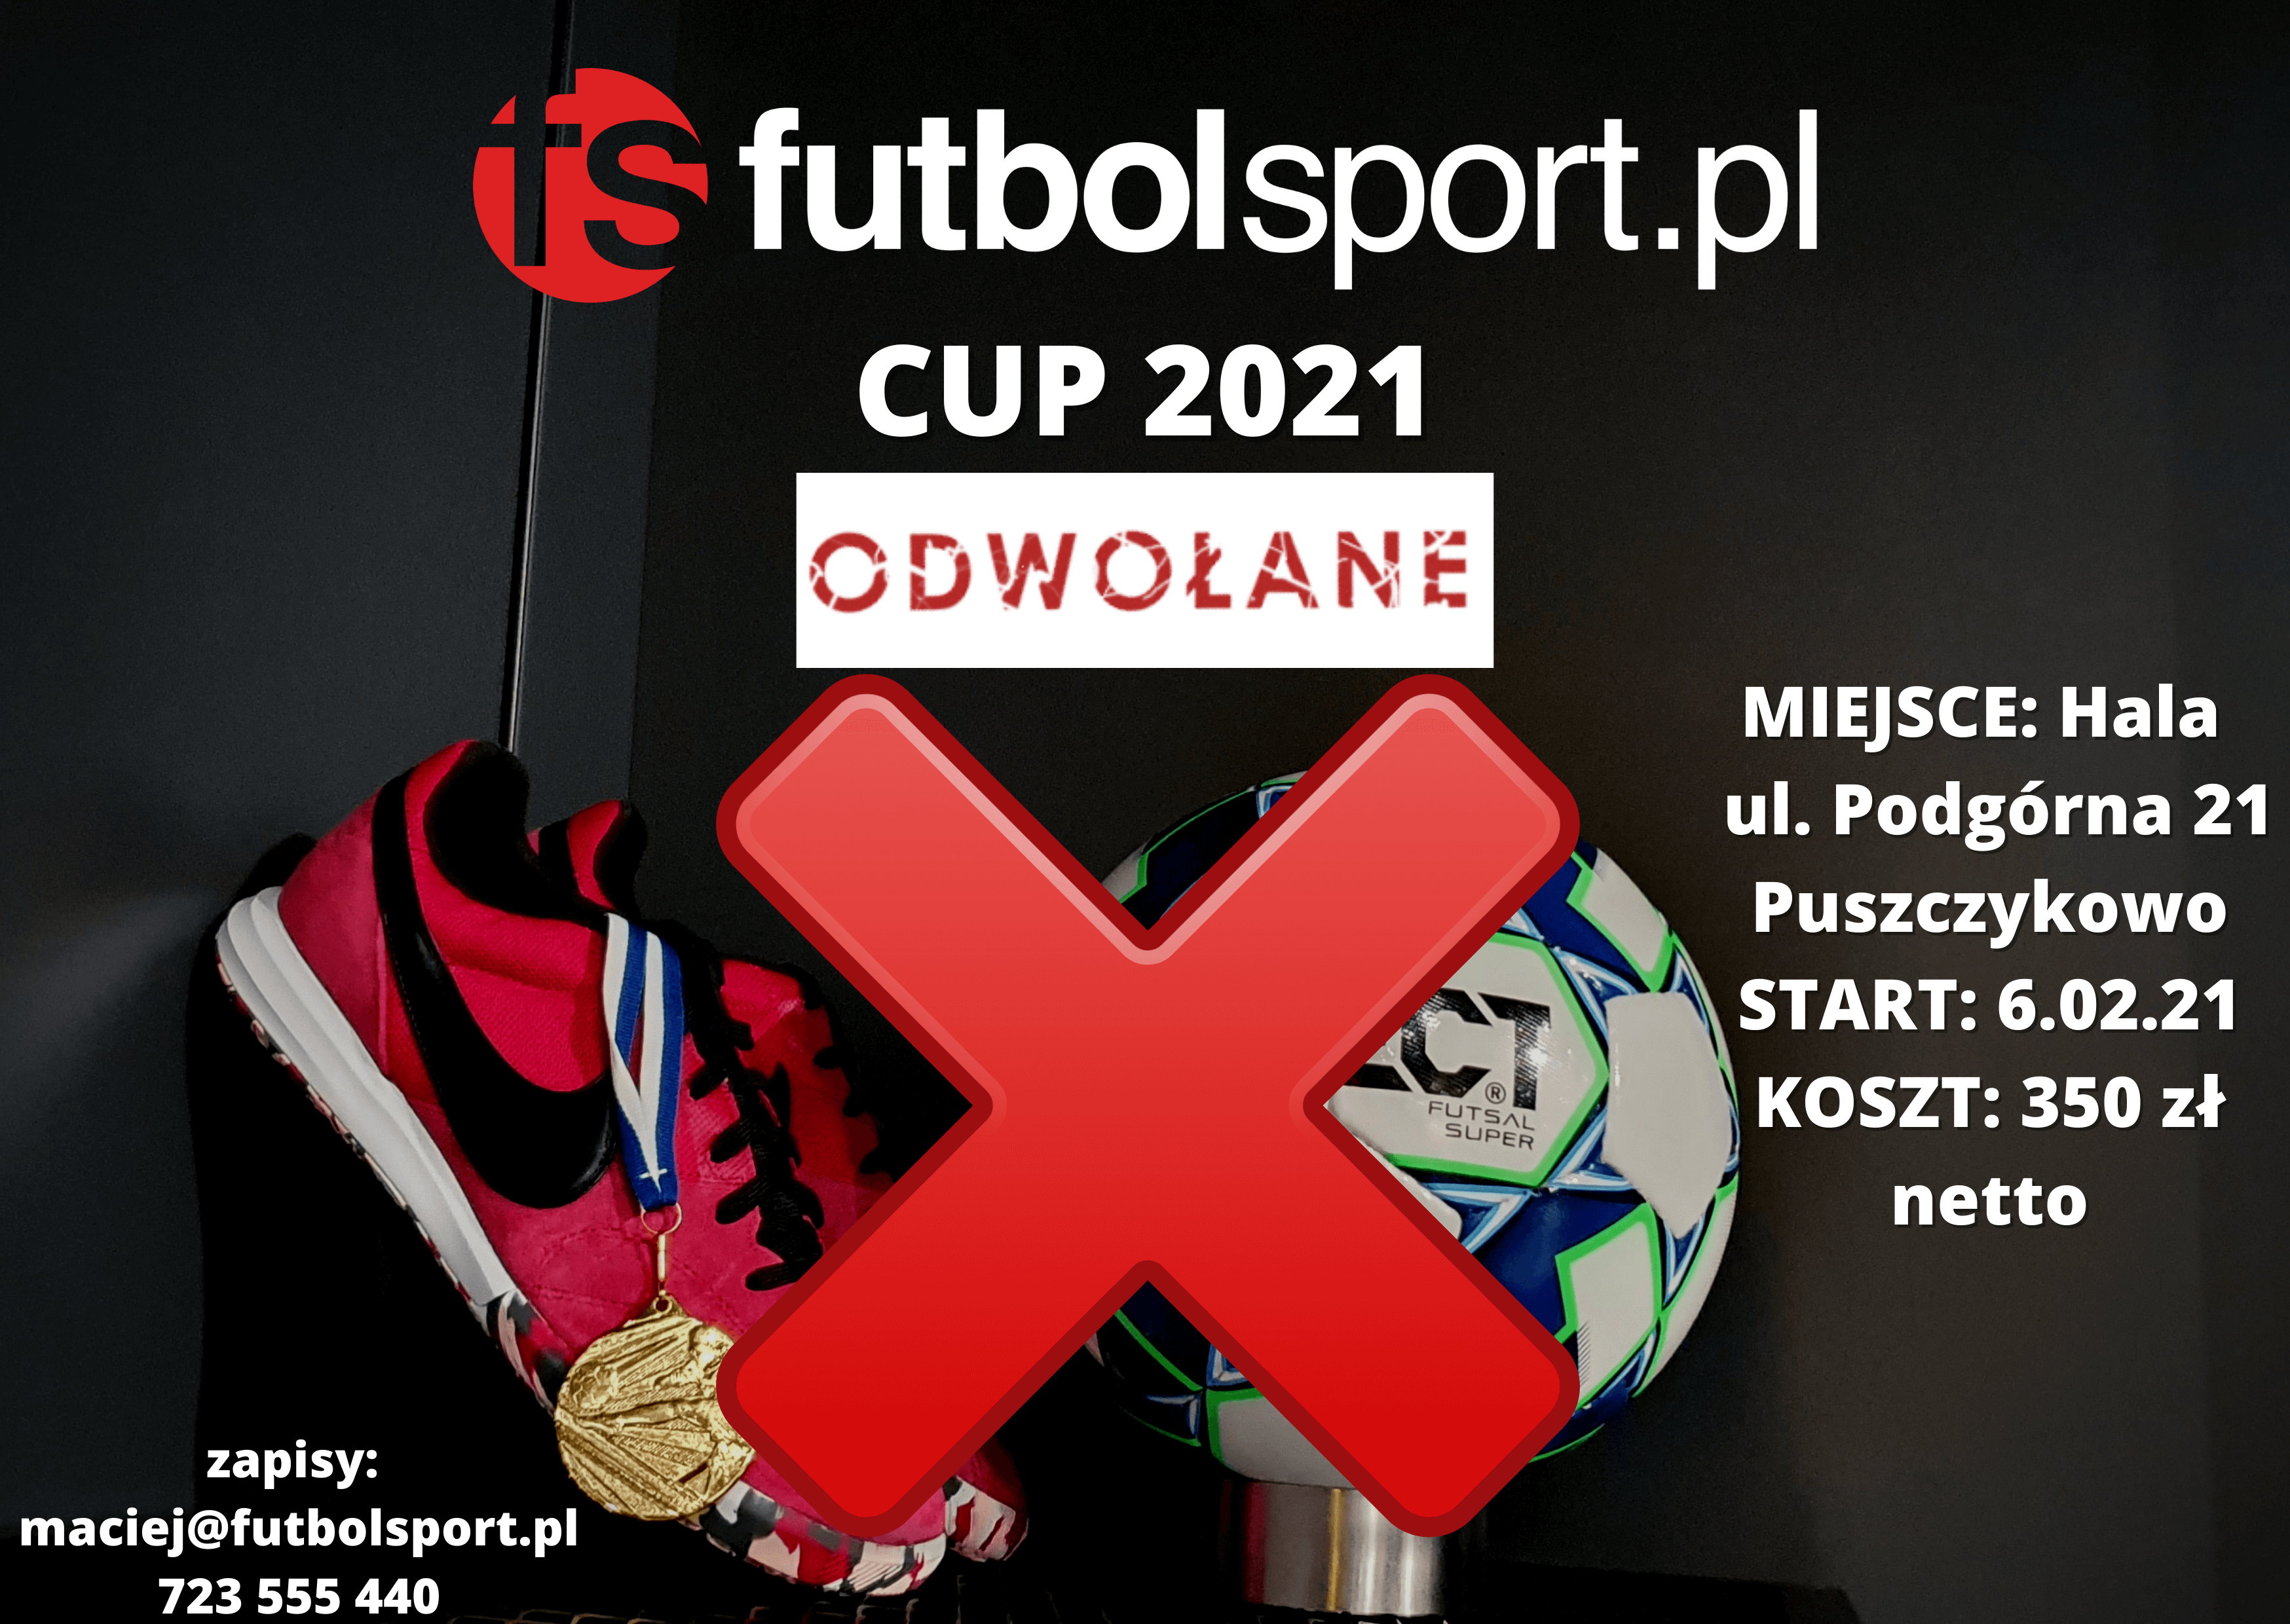 Turniej futbolsport.pl CUP 2021 - odwołany